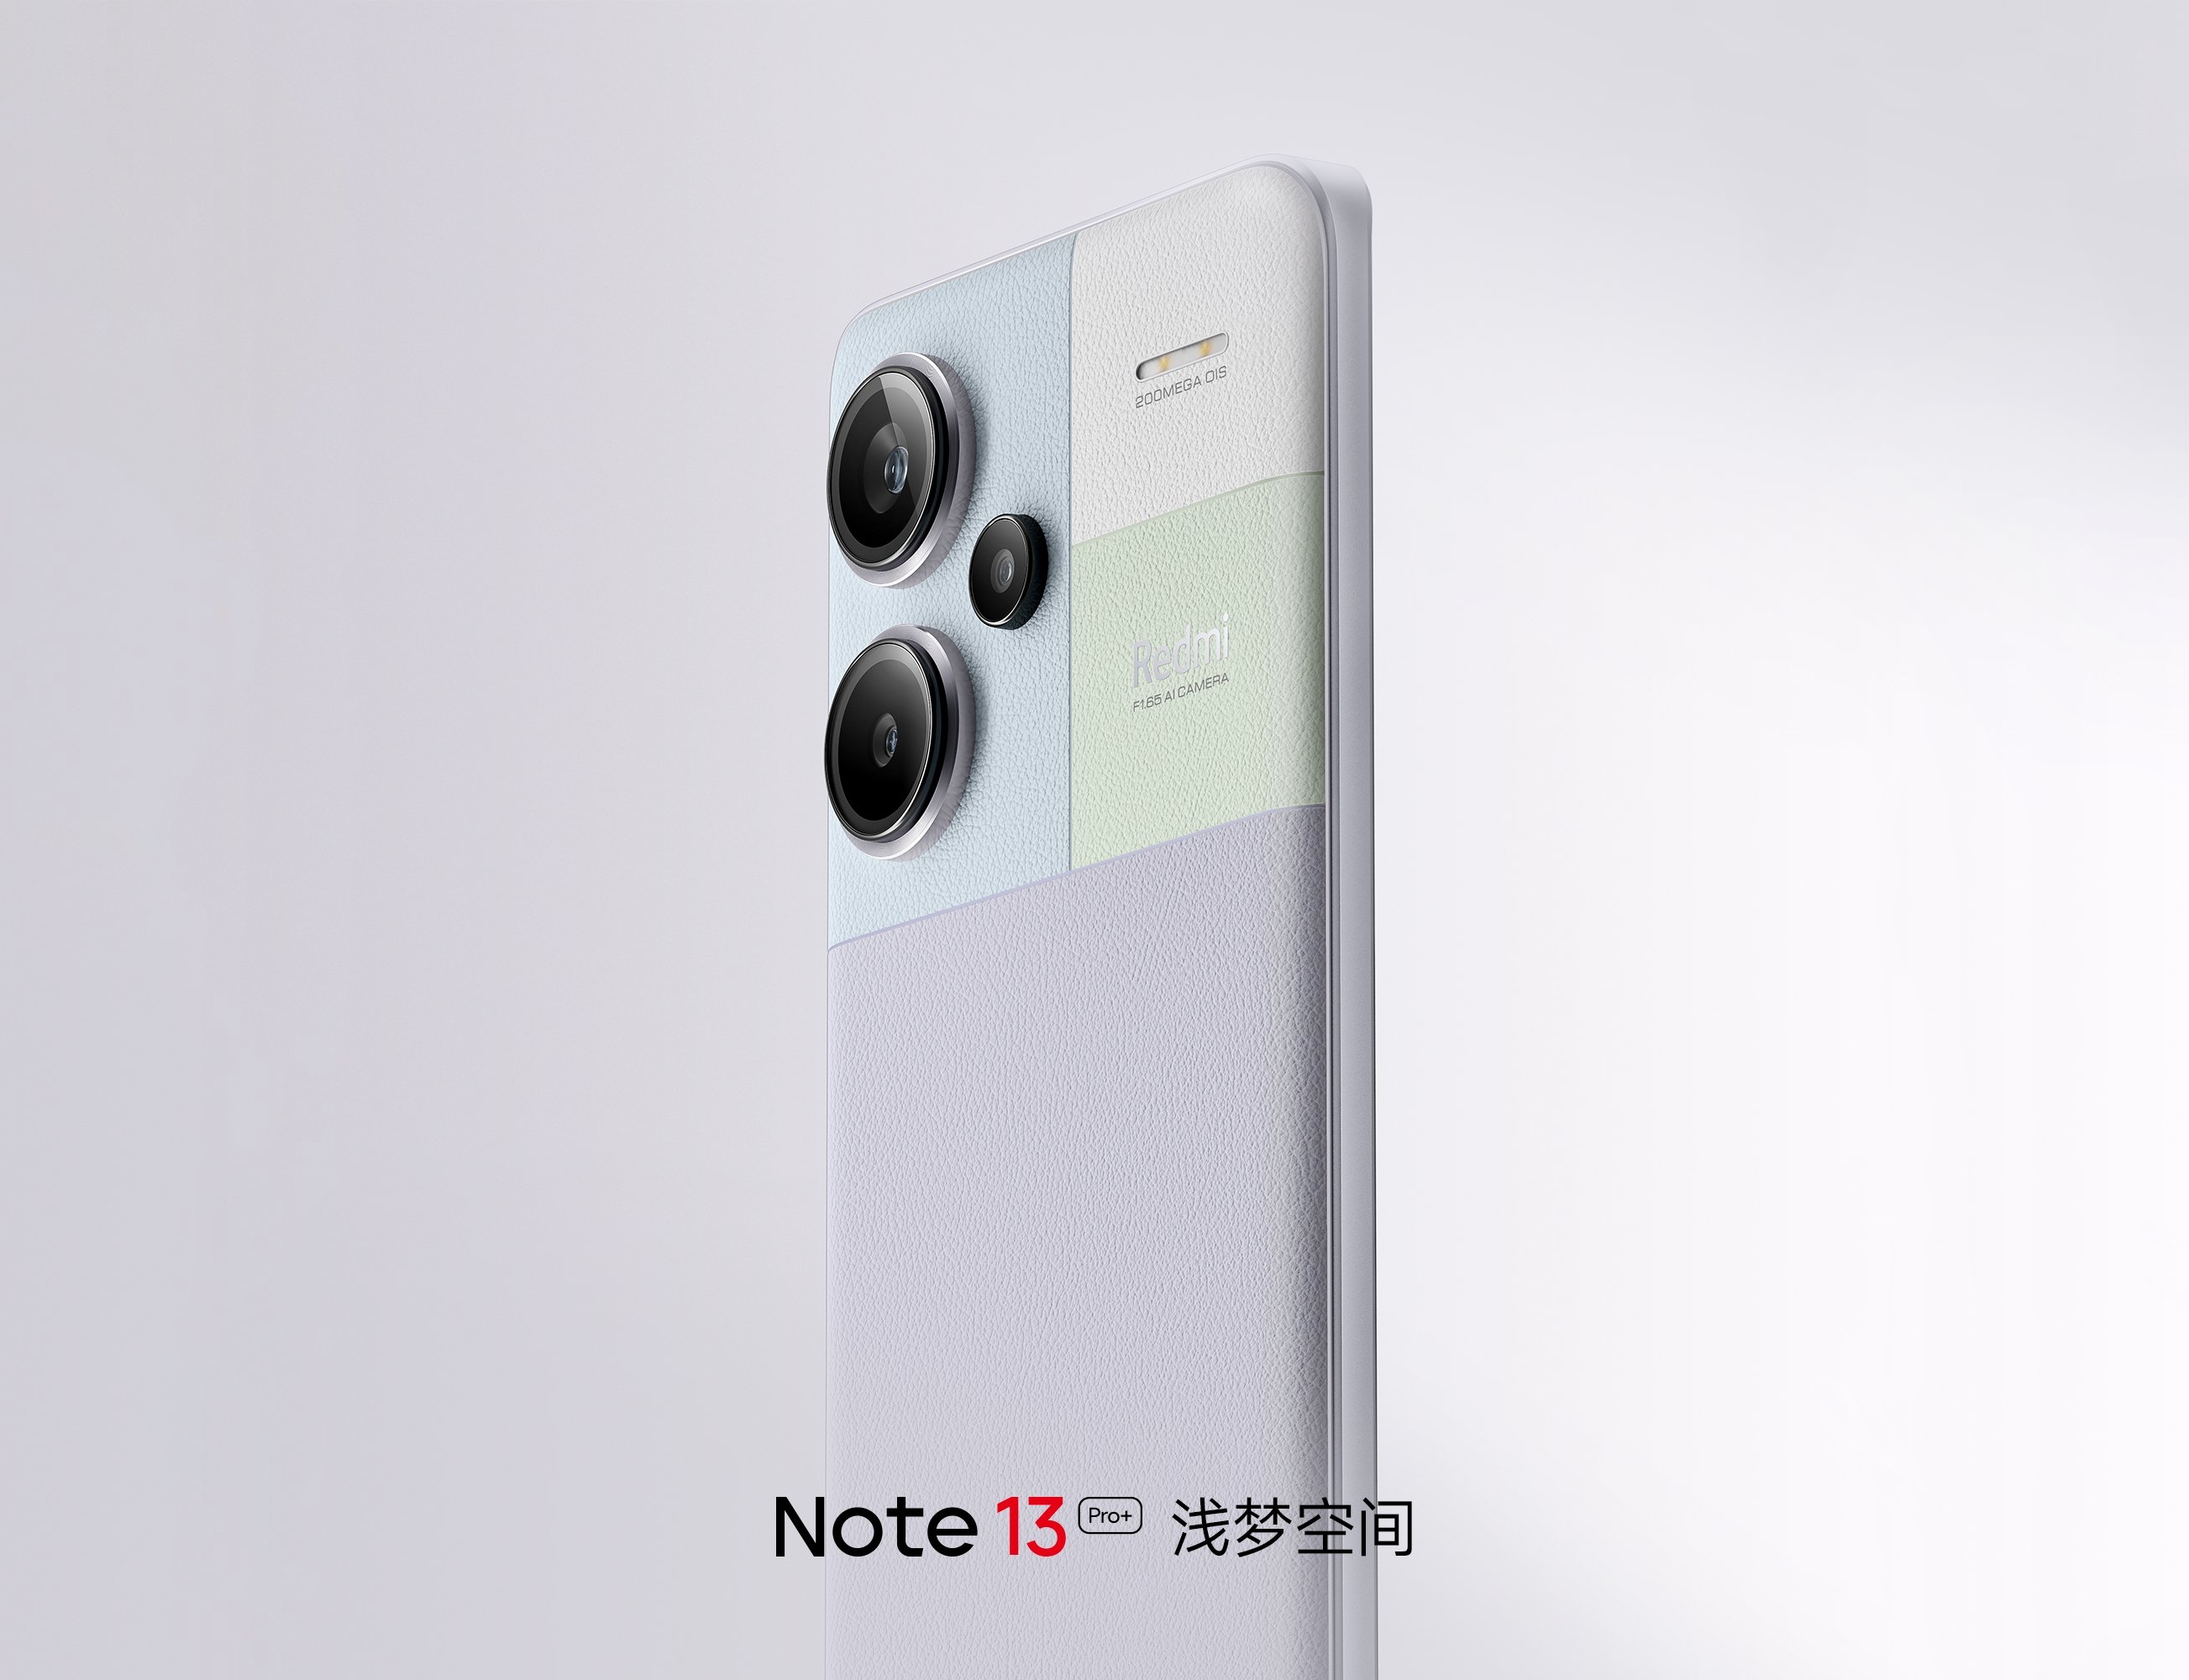 Écran OLED incurvé, puce Dimensity 7200 Ultra et appareil photo de 200 mégapixels : Les spécifications du Redmi Note 13 Pro+ 5G ont fait surface en ligne